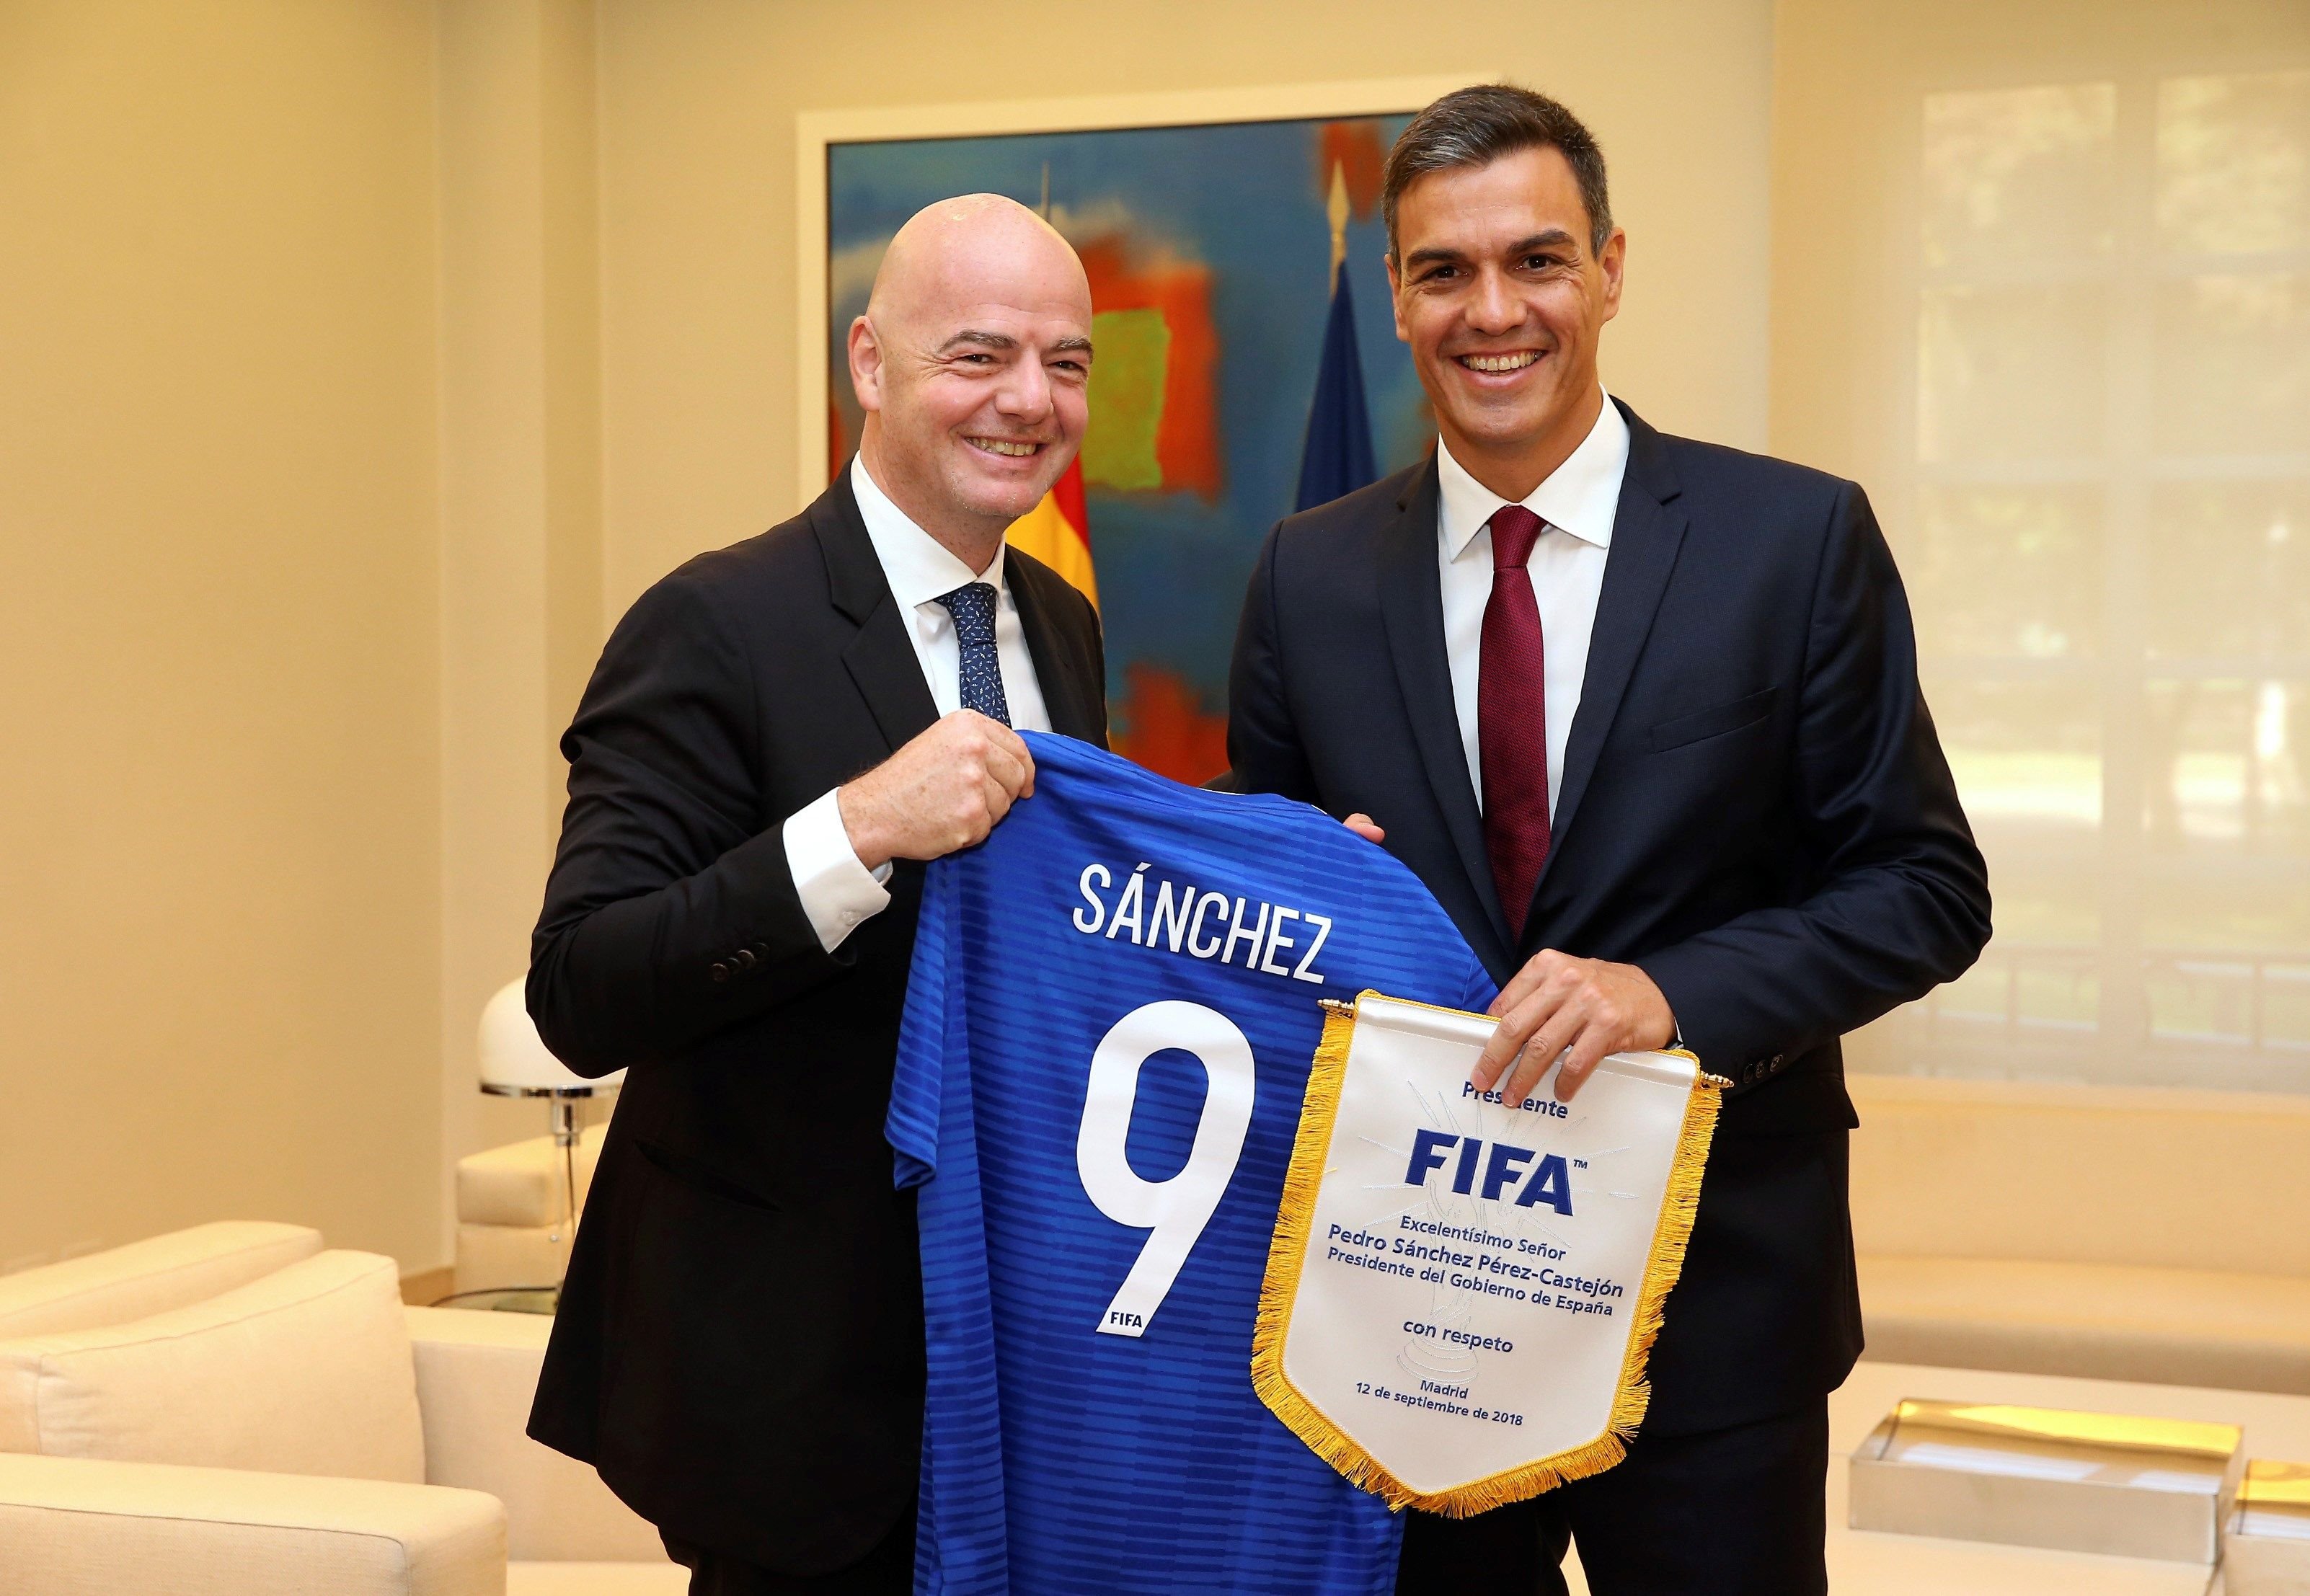 Espanya presentarà candidatura per organitzar el Mundial de futbol del 2030